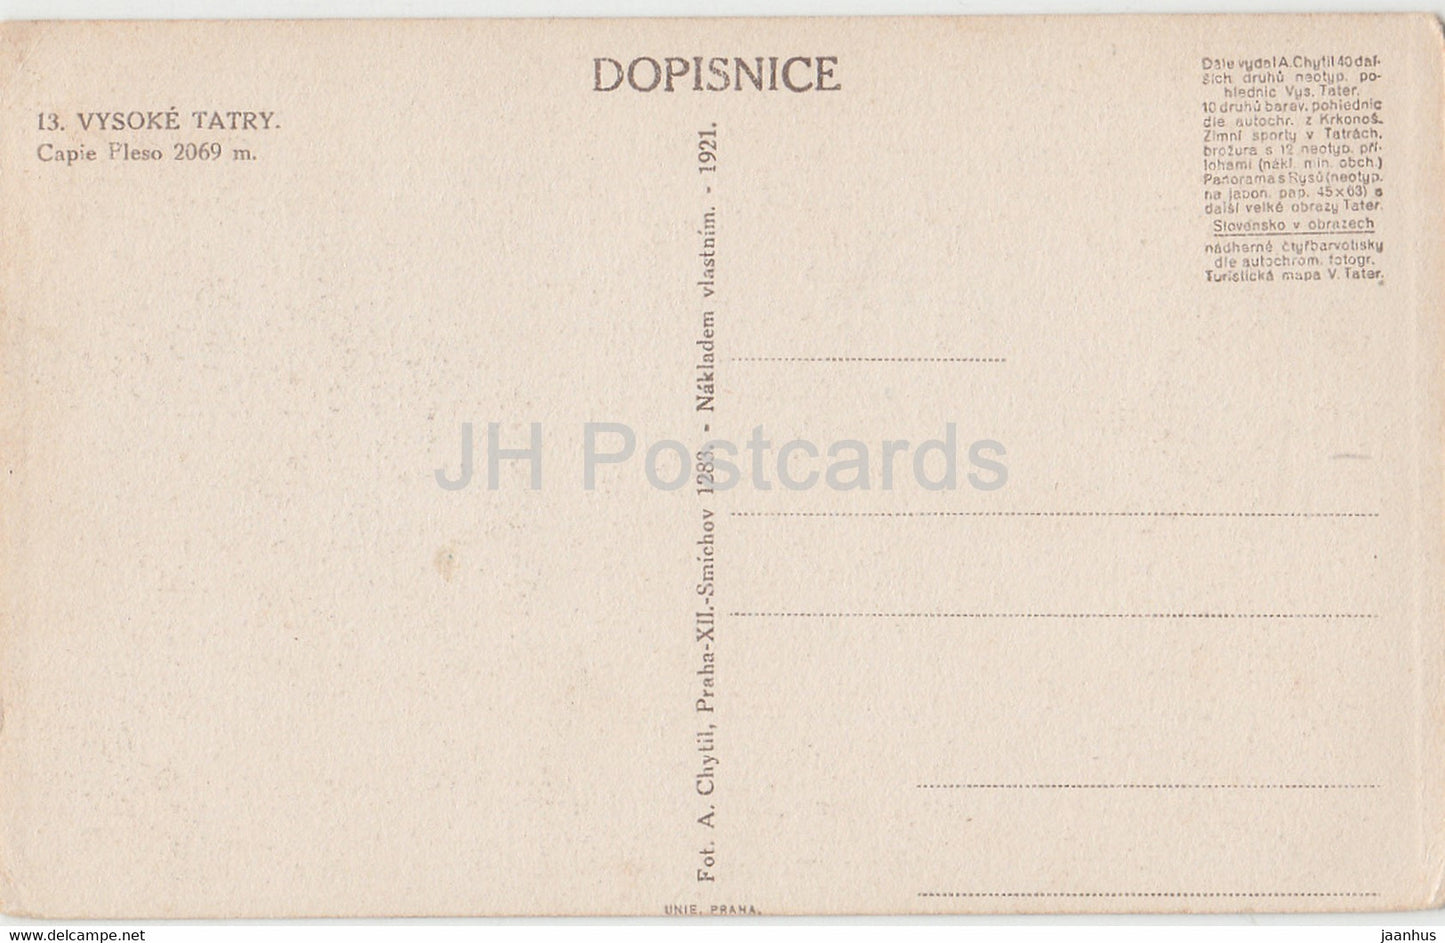 Vysoke Tatry - Capie Pleso 2069 m - old postcard - 1921 - Slovakia - unused